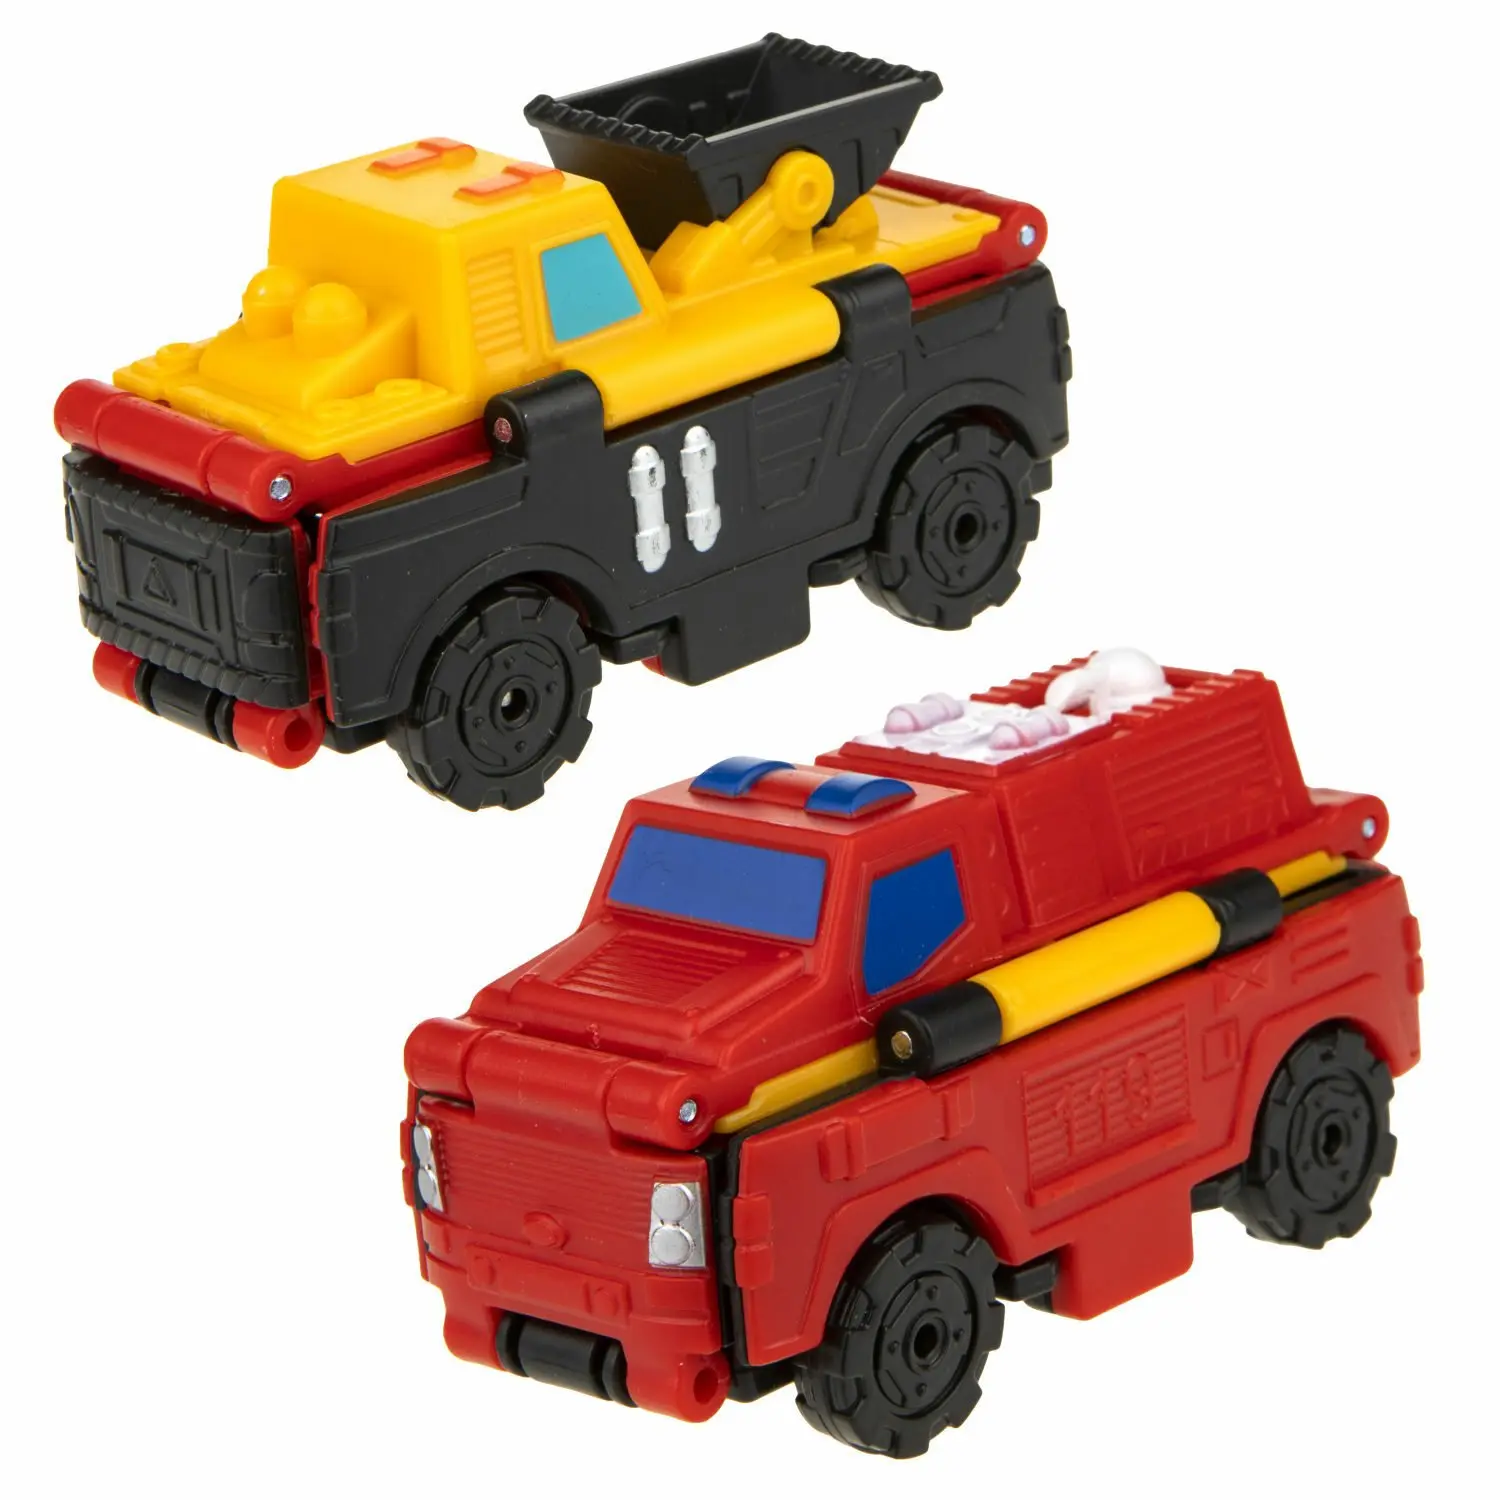 Transcar Double Погрузчик – Пожарная машина - фото